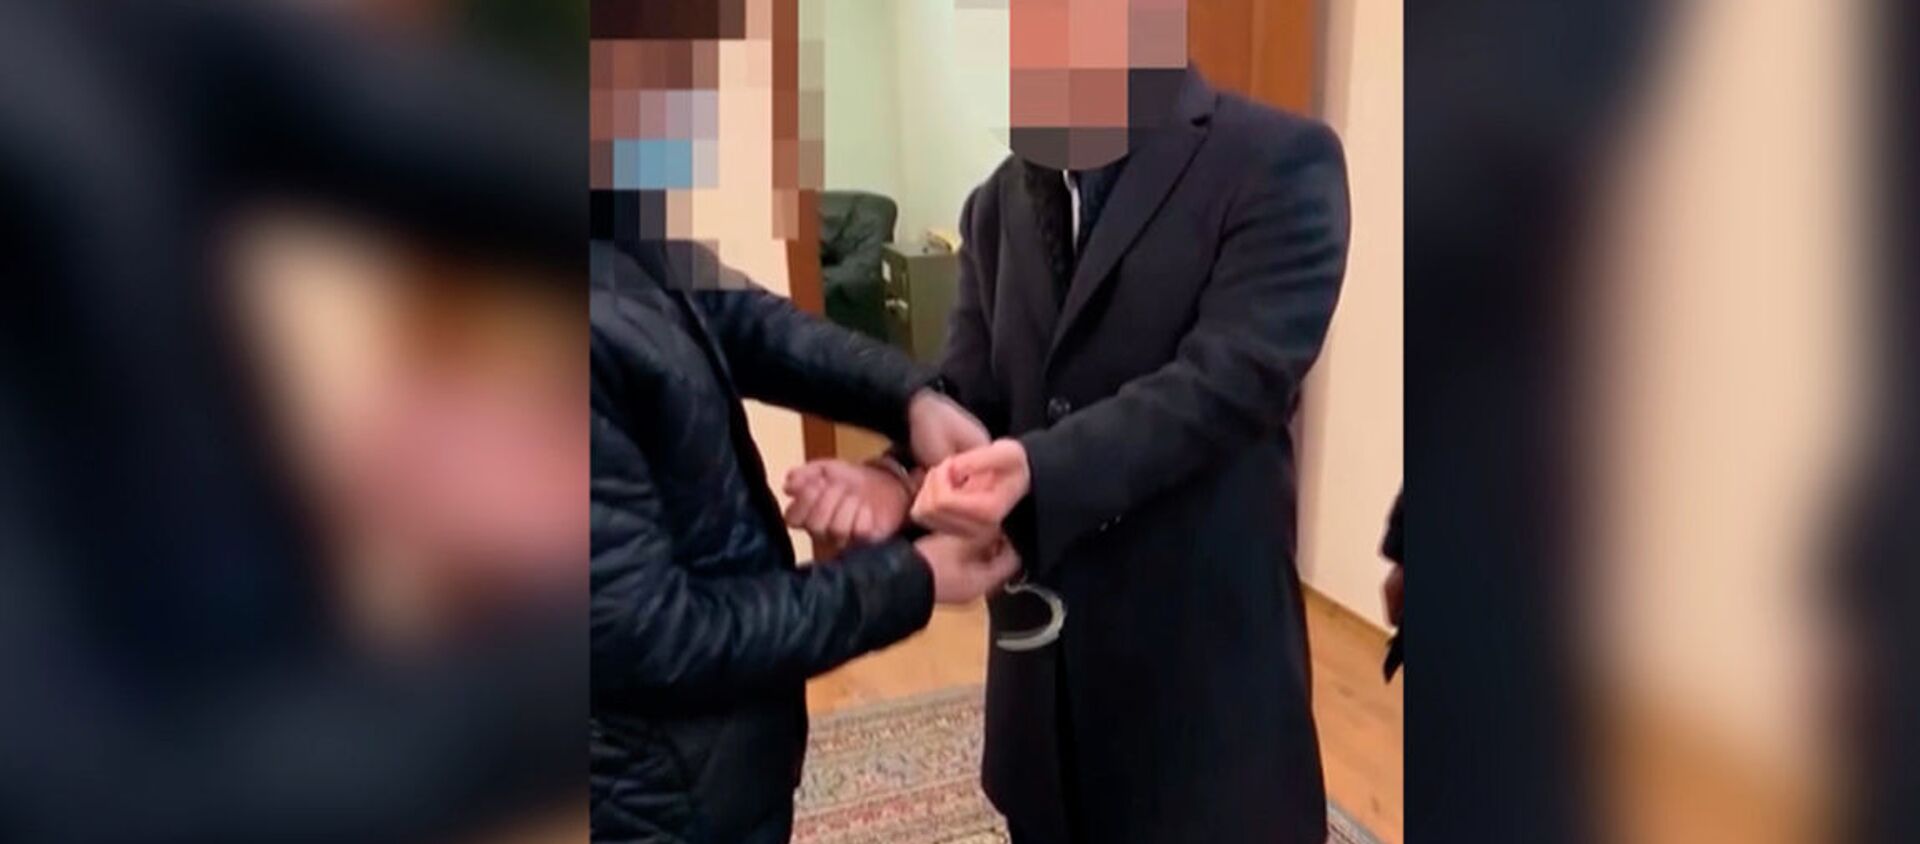 Заковали в наручники в кабинете — как задерживали главу Кыргызалтына. Видео - Sputnik Кыргызстан, 1920, 15.02.2021